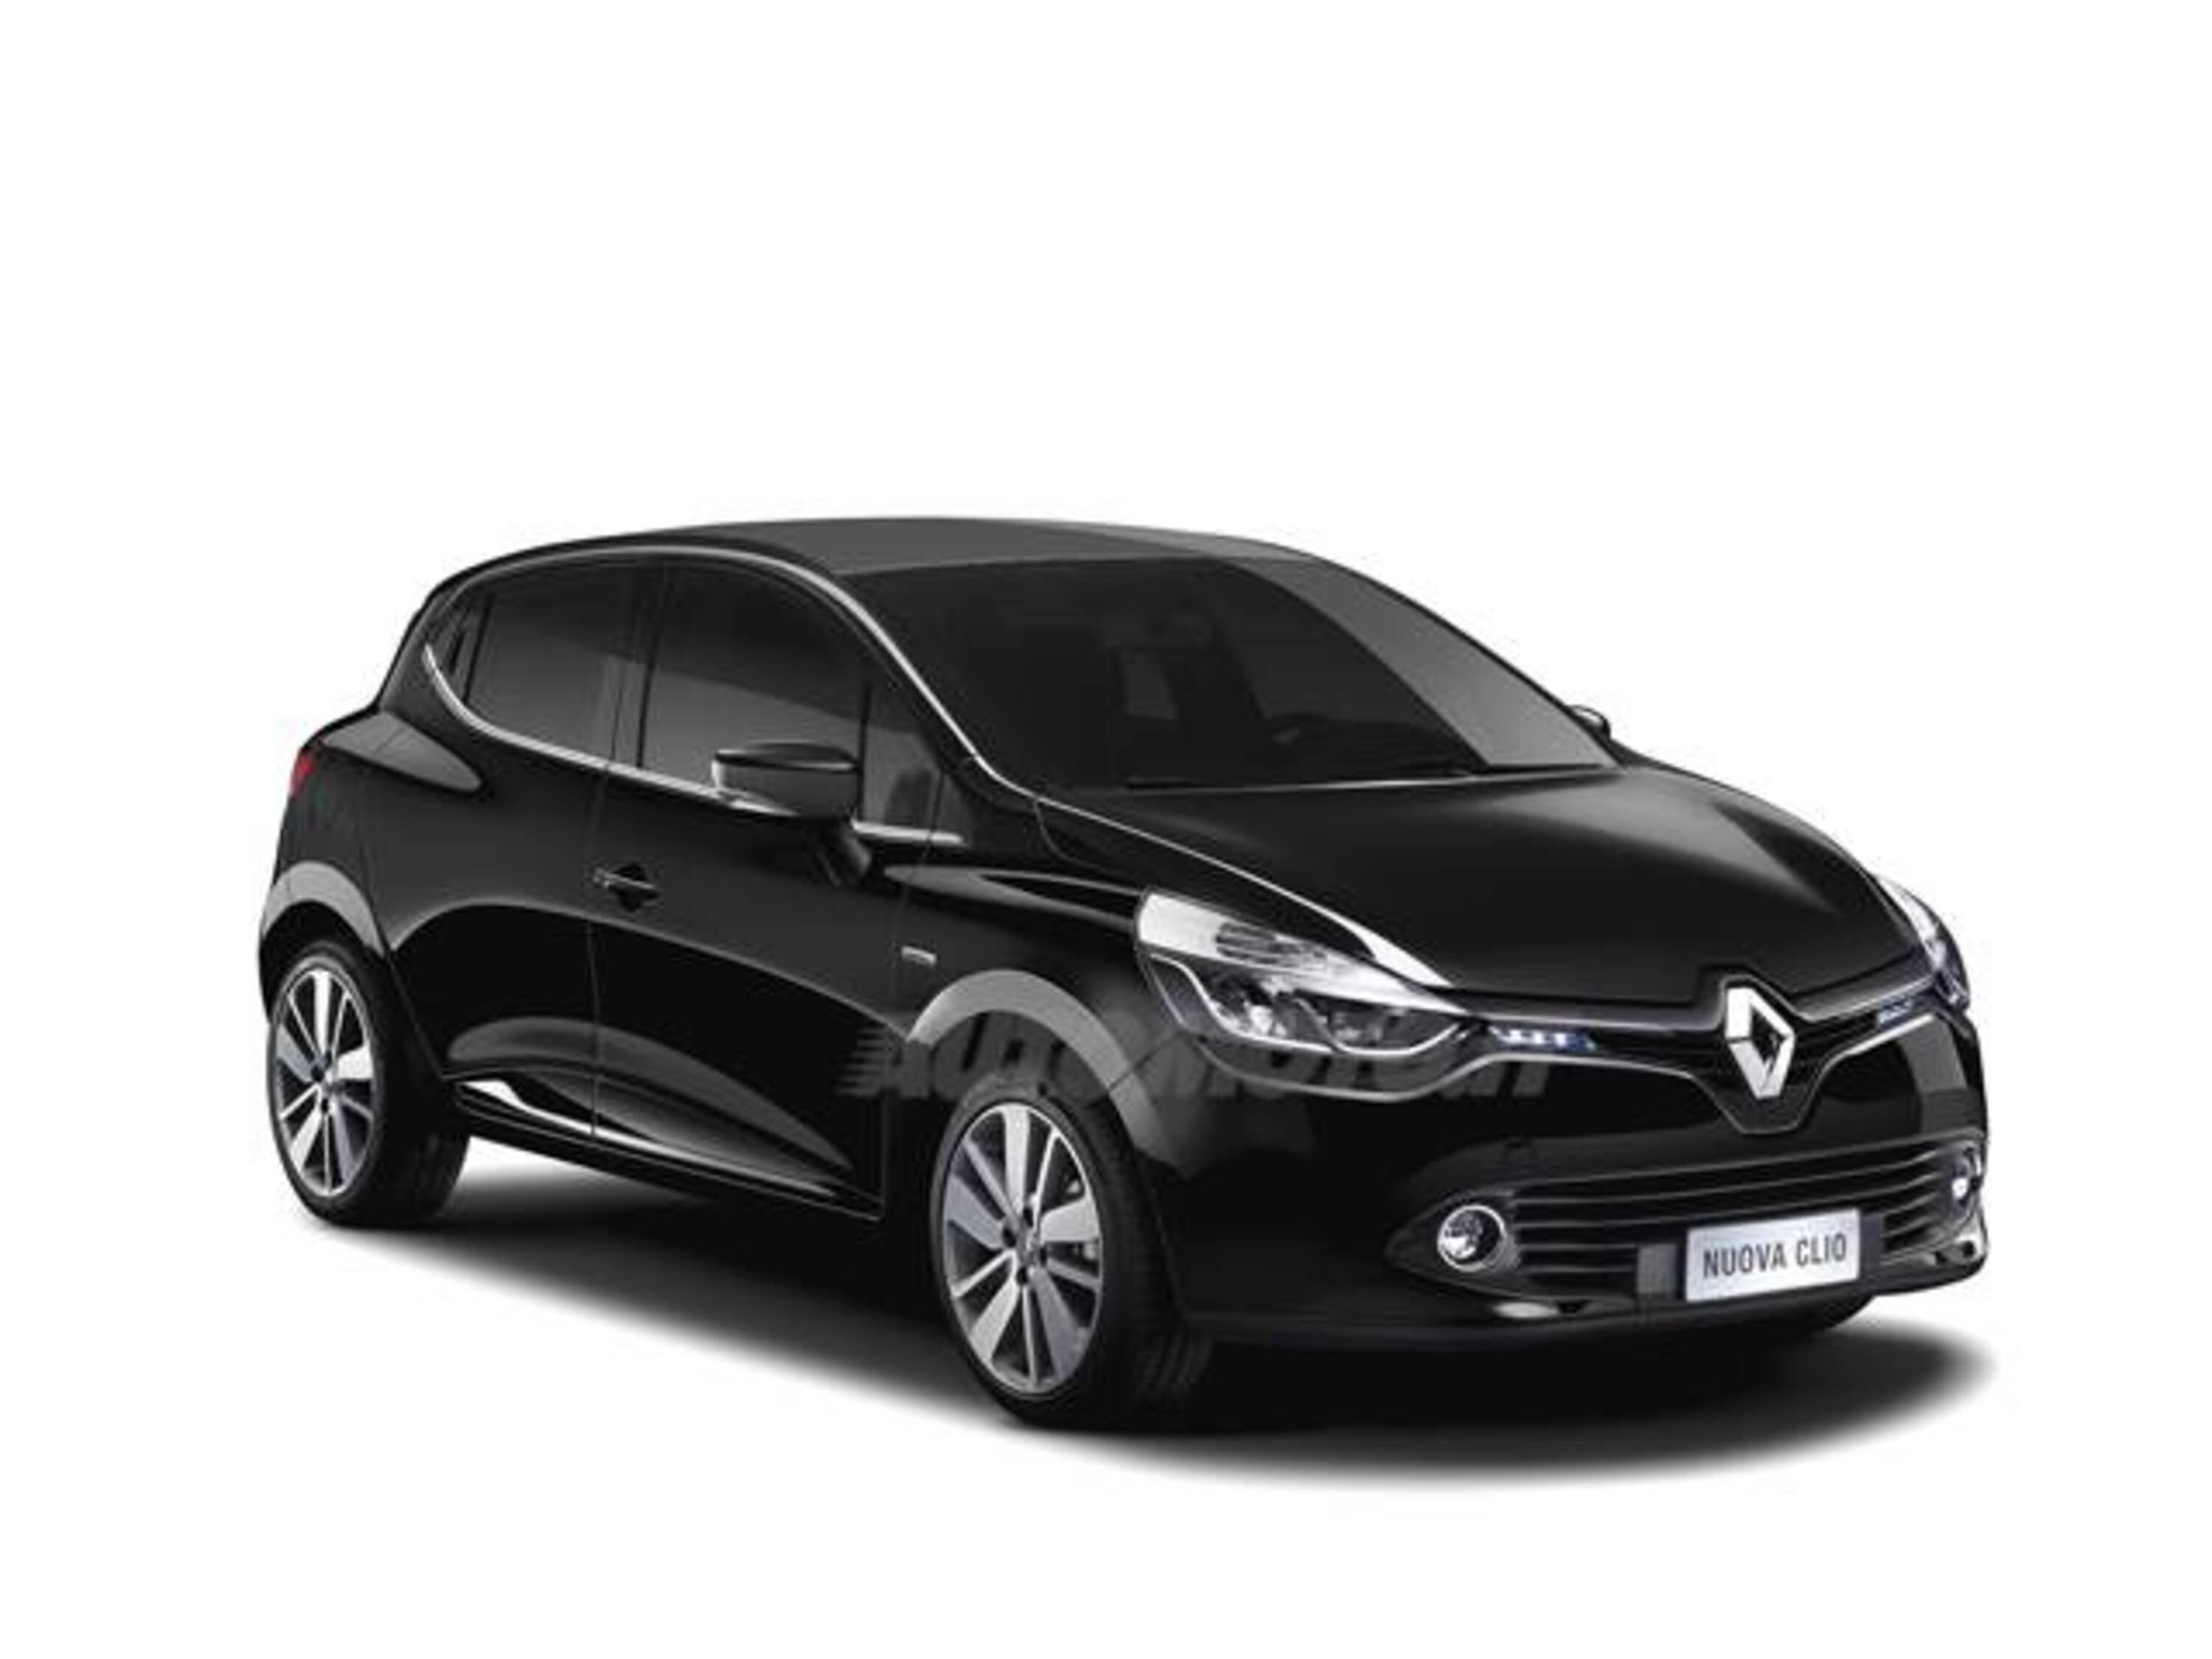 Listino Renault Clio prezzo - scheda tecnica - consumi - foto 